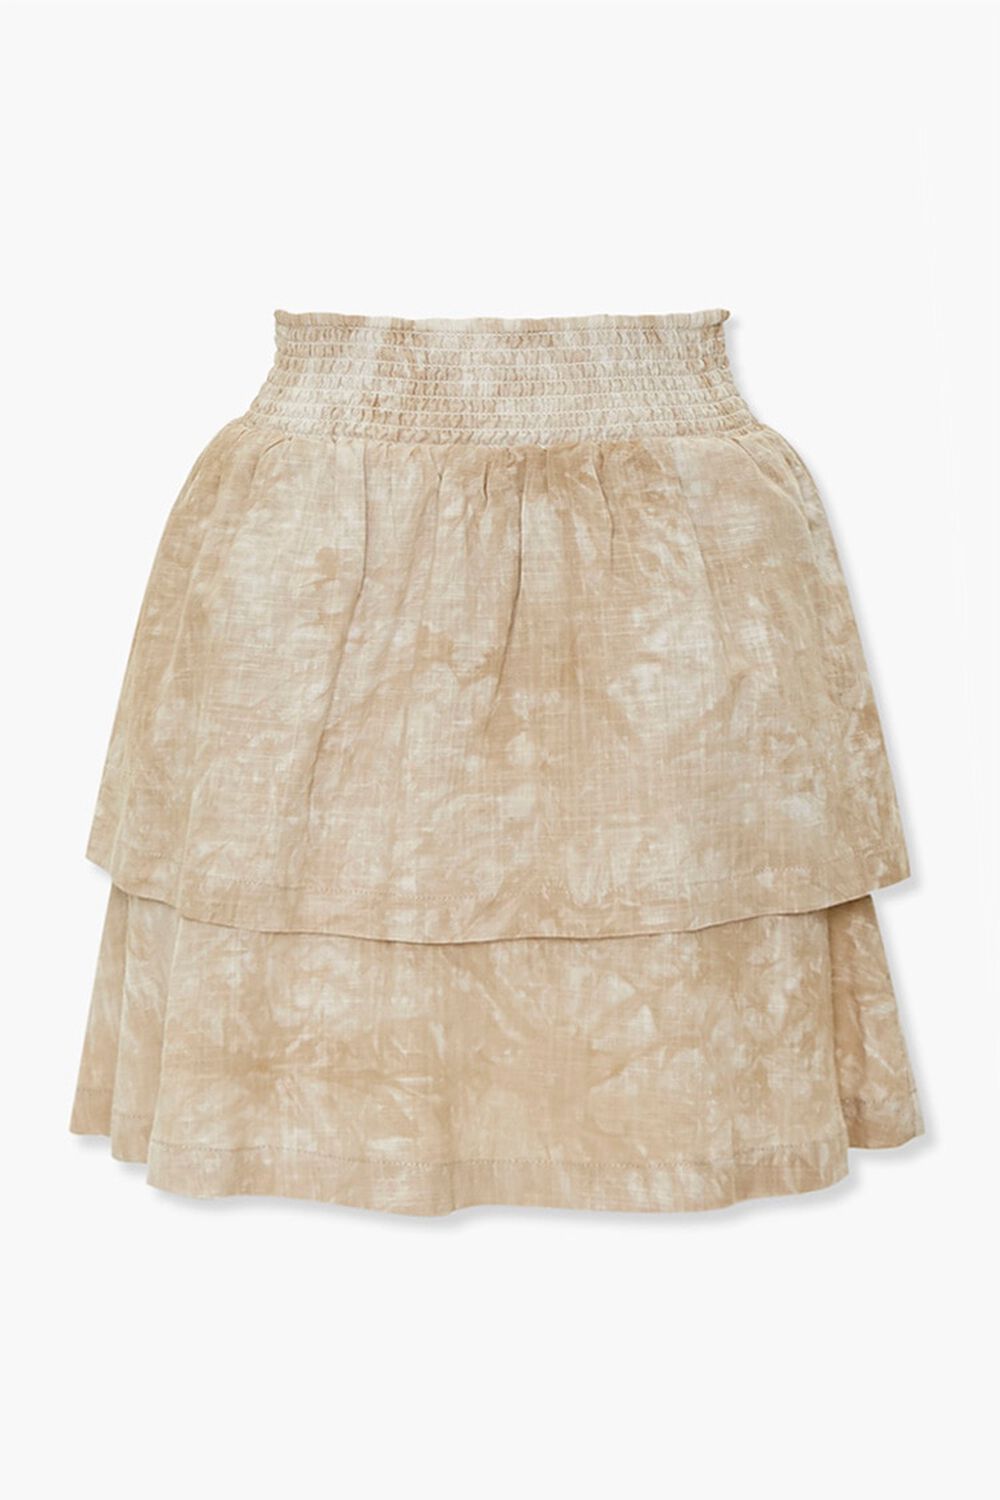 KHAKI/CREAM Tiered Mineral Wash Mini Skirt, image 1